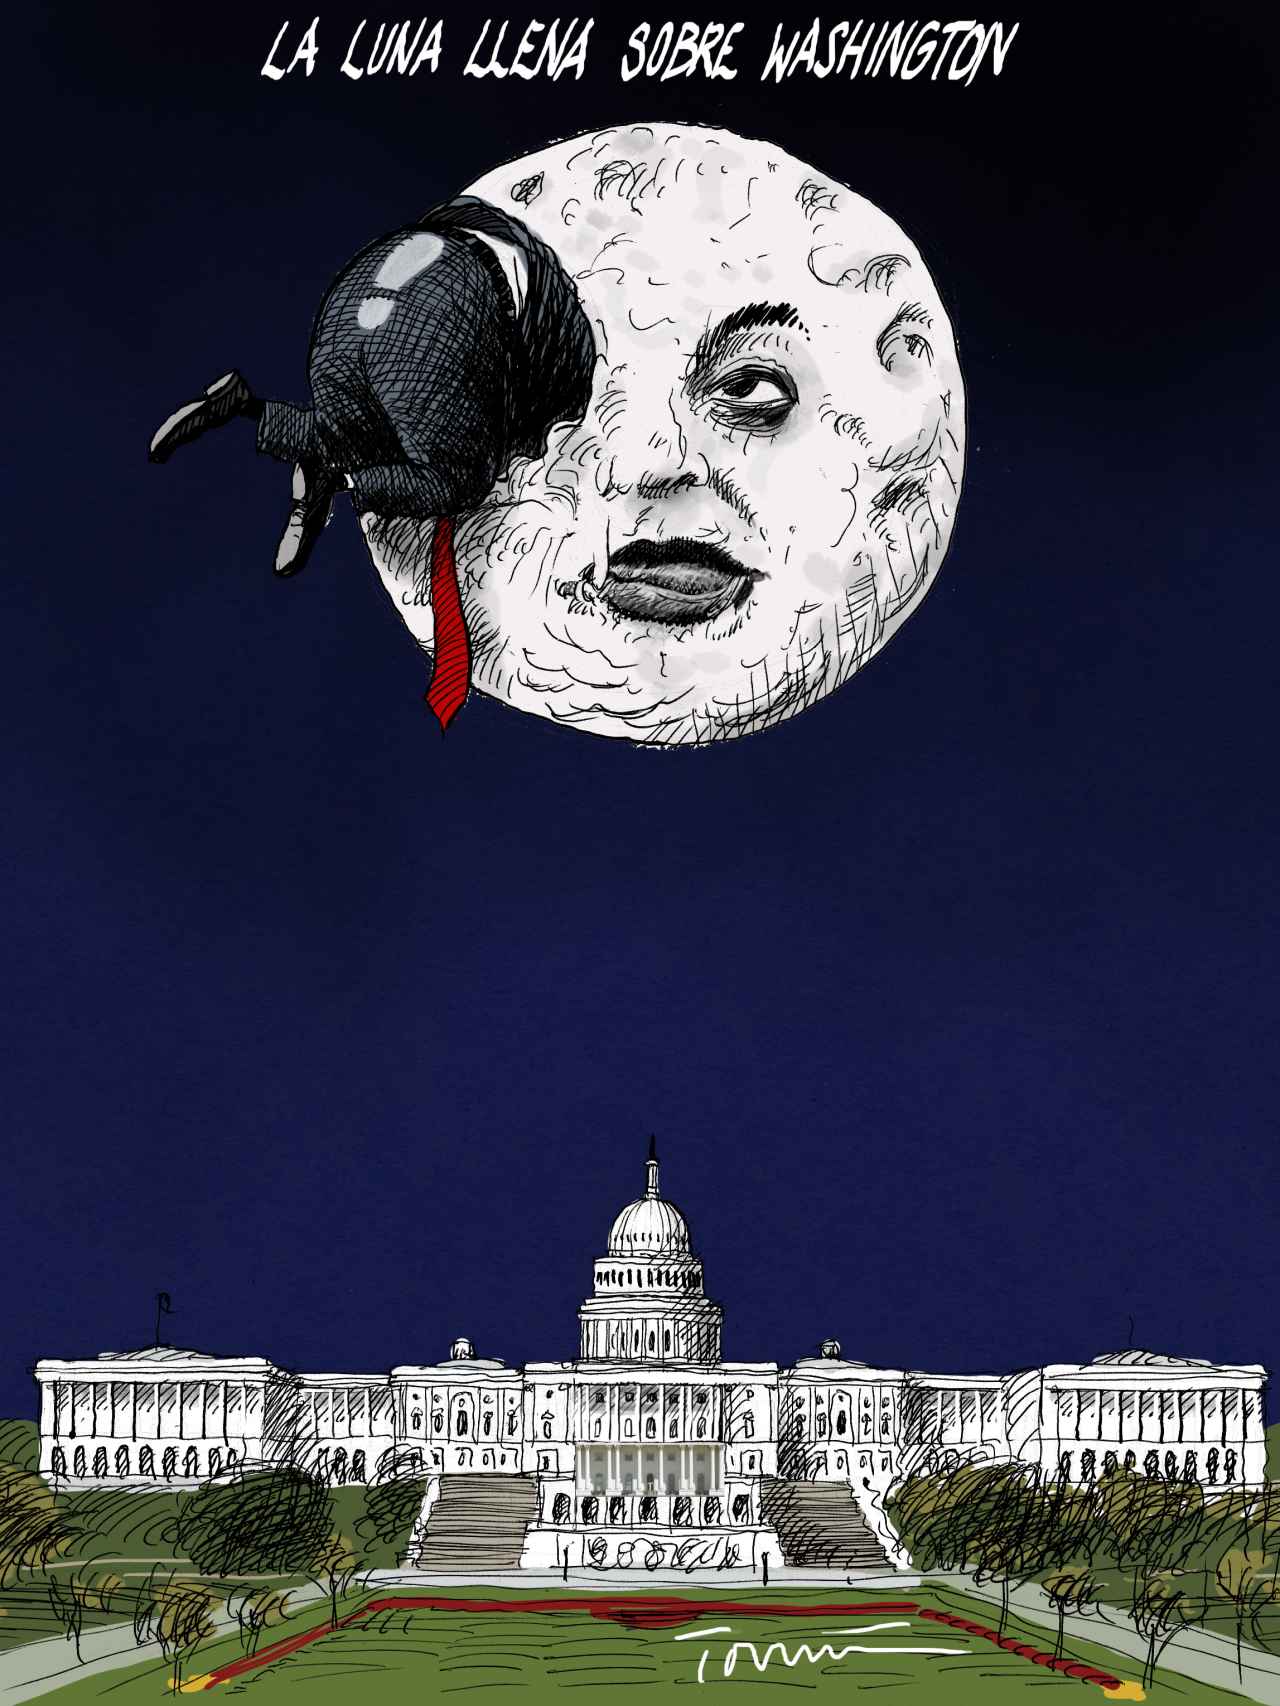 La luna llena sobre Washington